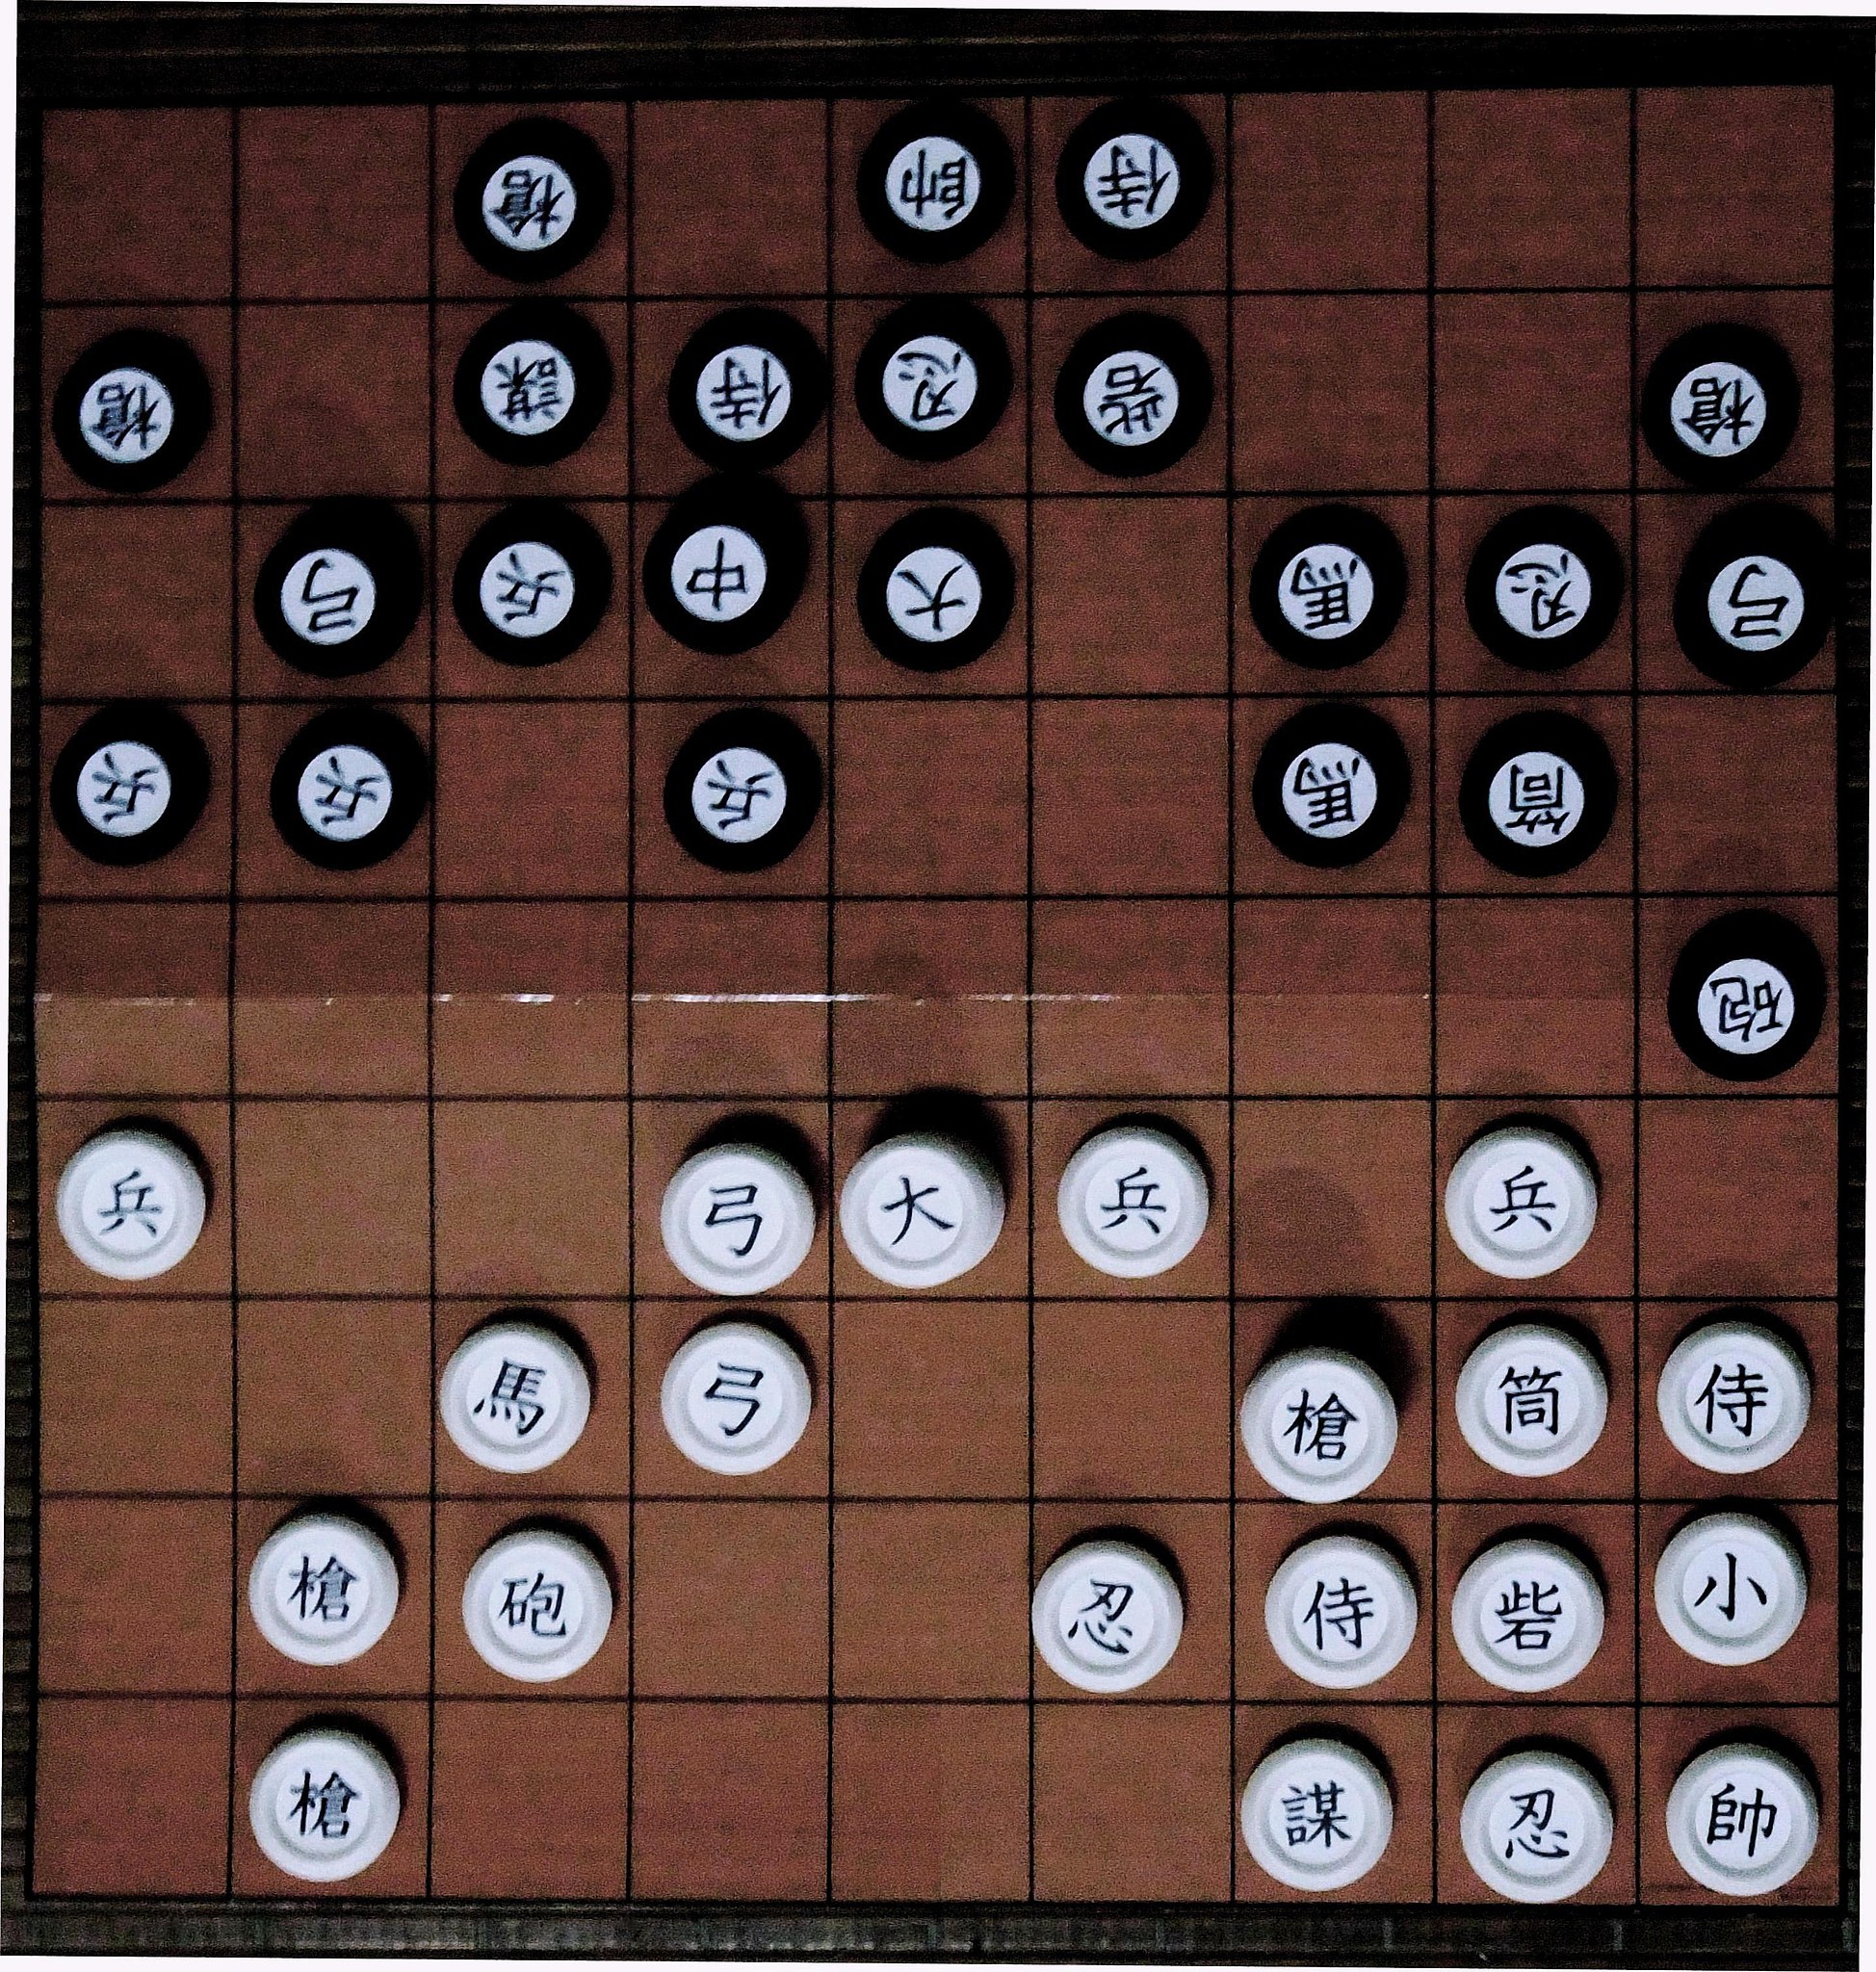 ファイル:軍儀棋.jpg - Wikipedia